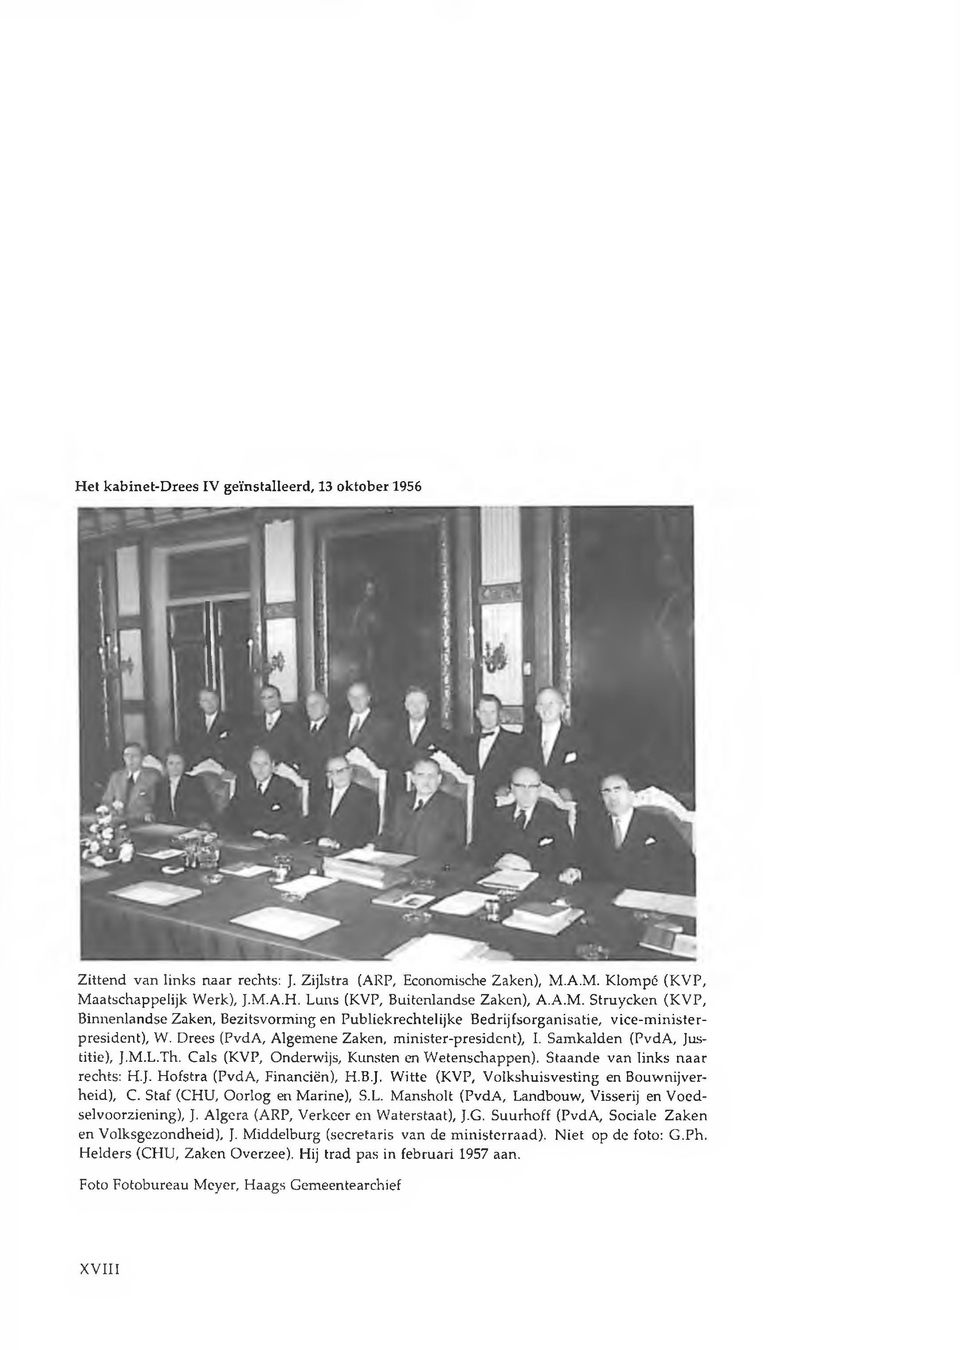 Samkalden (PvdA, Justitie), J.M.L.Th. Cals (KVP, Onderwijs, Kunsten en Wetenschappen). Staande van links naar rechts: H.J. Hofstra (PvdA, Financiën), H.B.J. Witte (KVP, Volkshuisvesting en Bouwnijverheid), C.